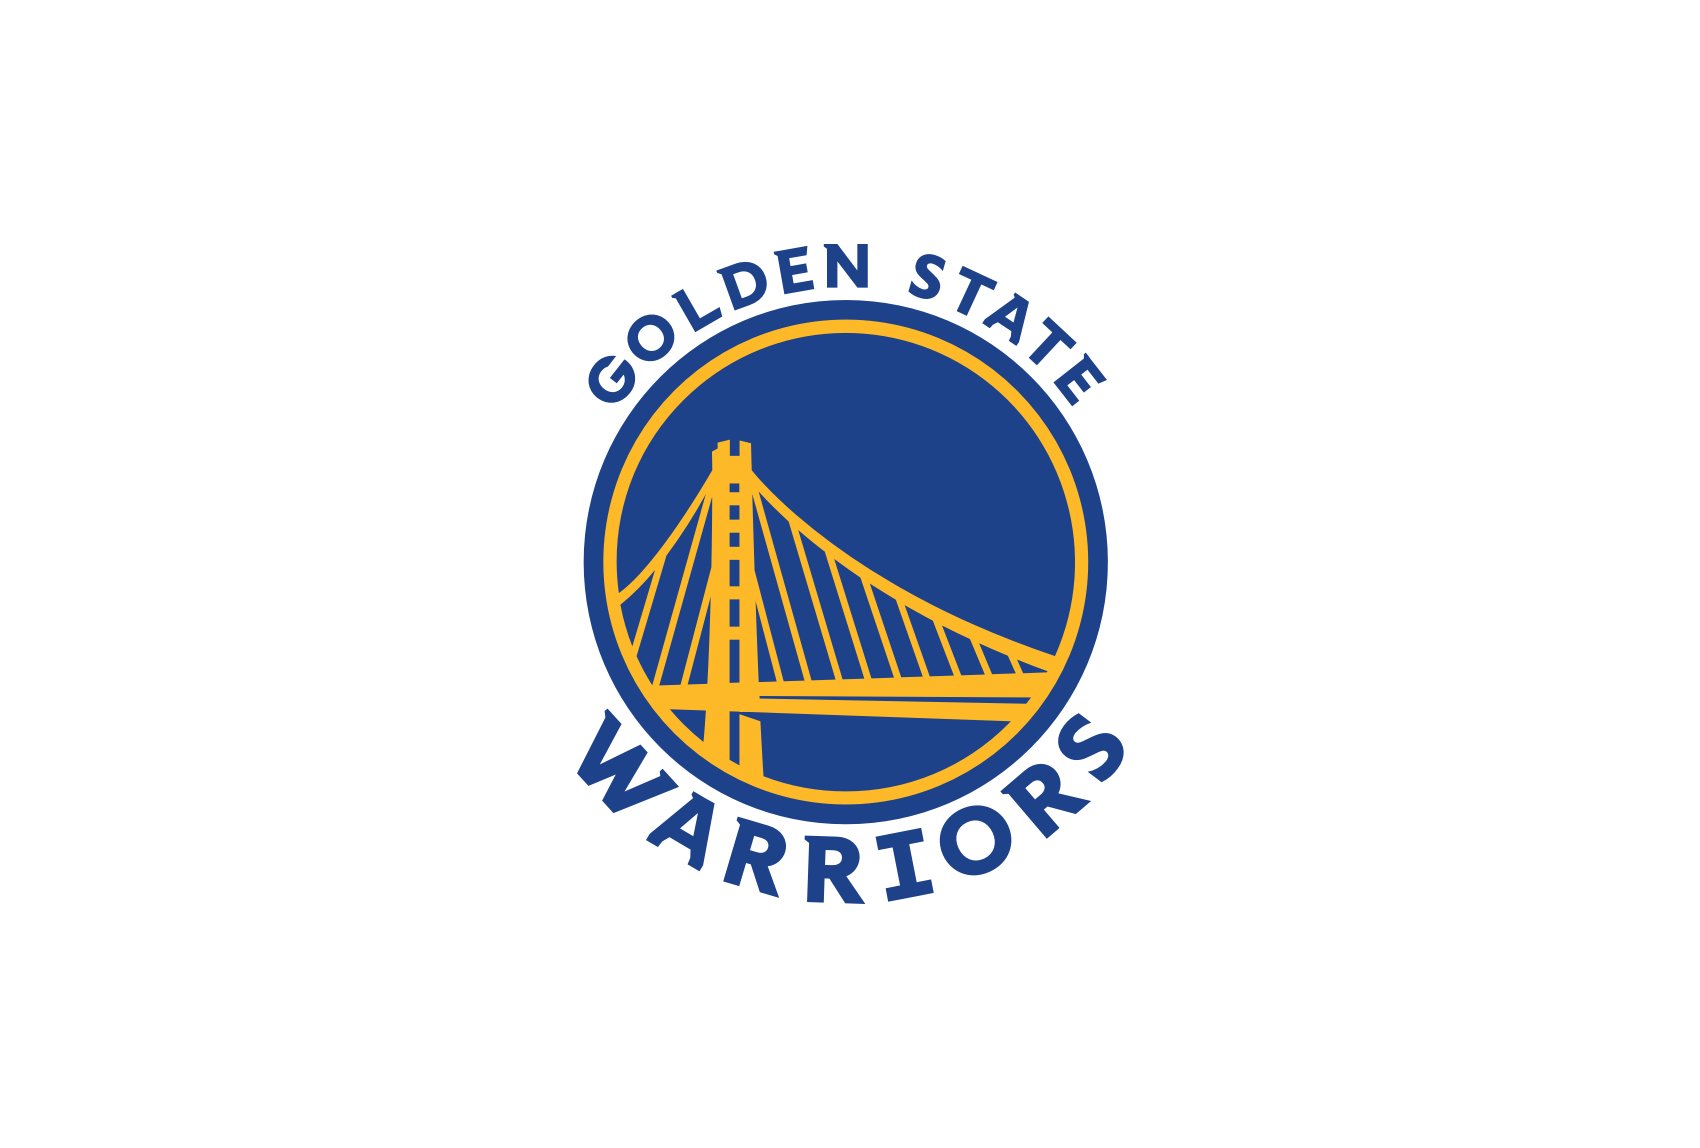 gold-logo-golden-state-warriors